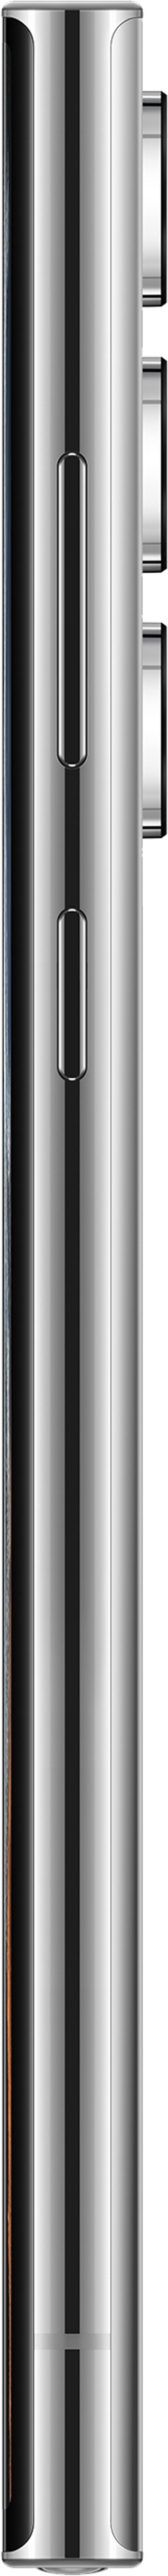 Samsung Galaxy S22 Ultra 128GB Dual-SIM Fantom hvid